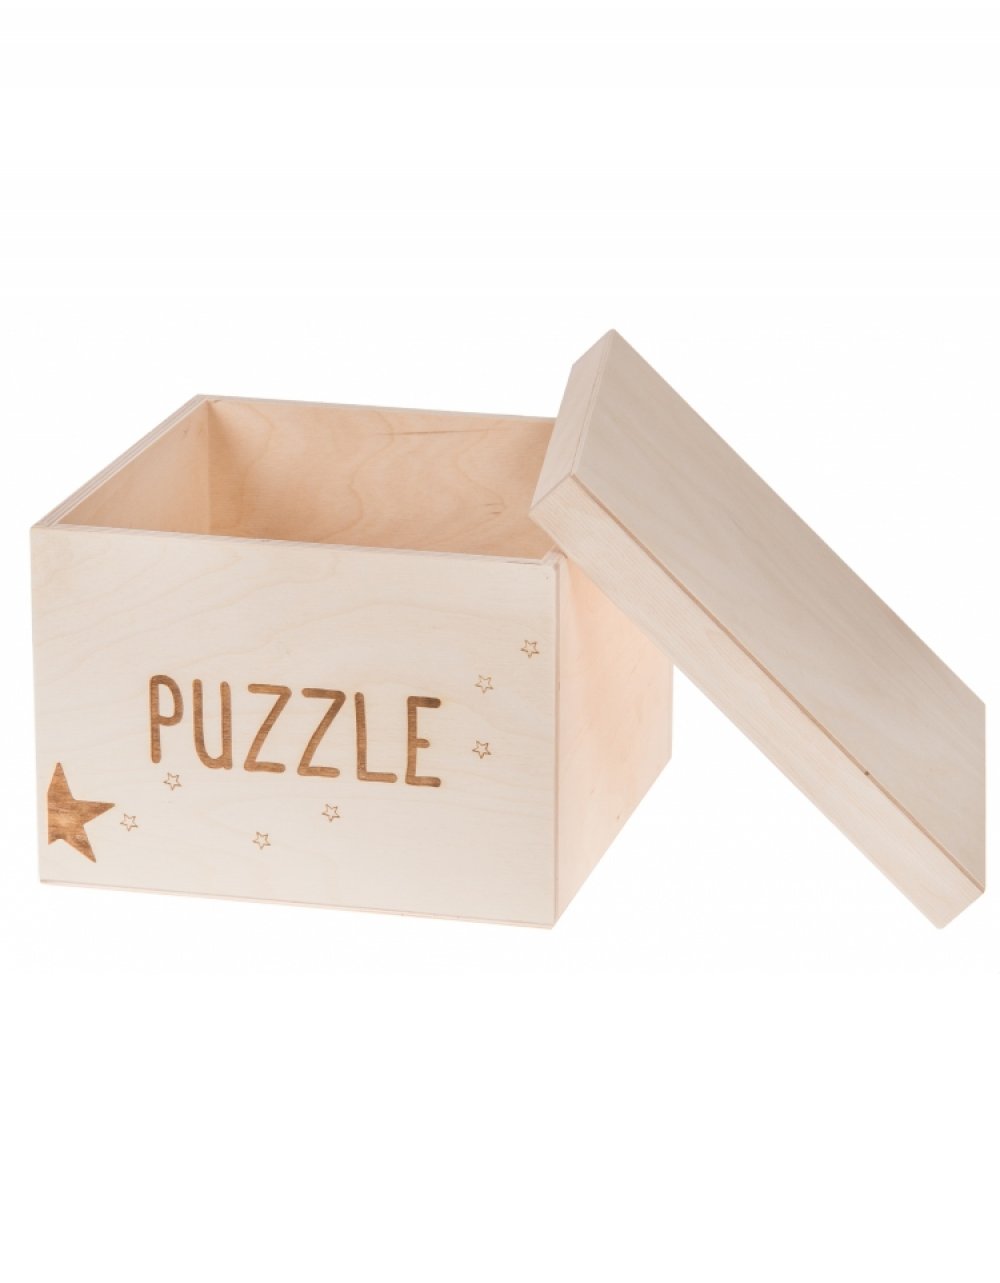 Dřevěný box na hračky PUZZLE, 20x20x15 cm